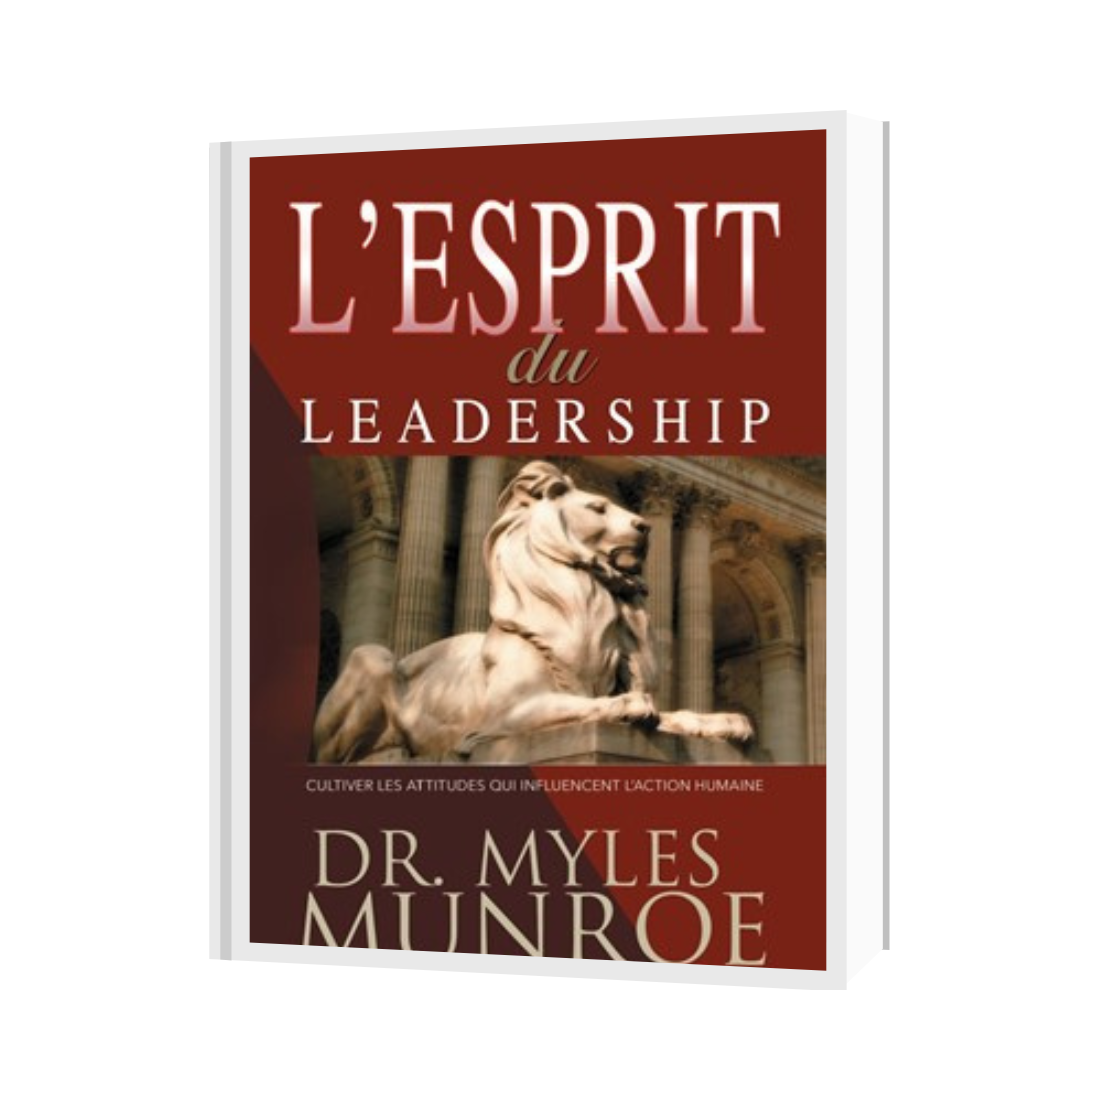 L'Esprit du leadership
Cultiver les attitudes qui influencent l'action humaine